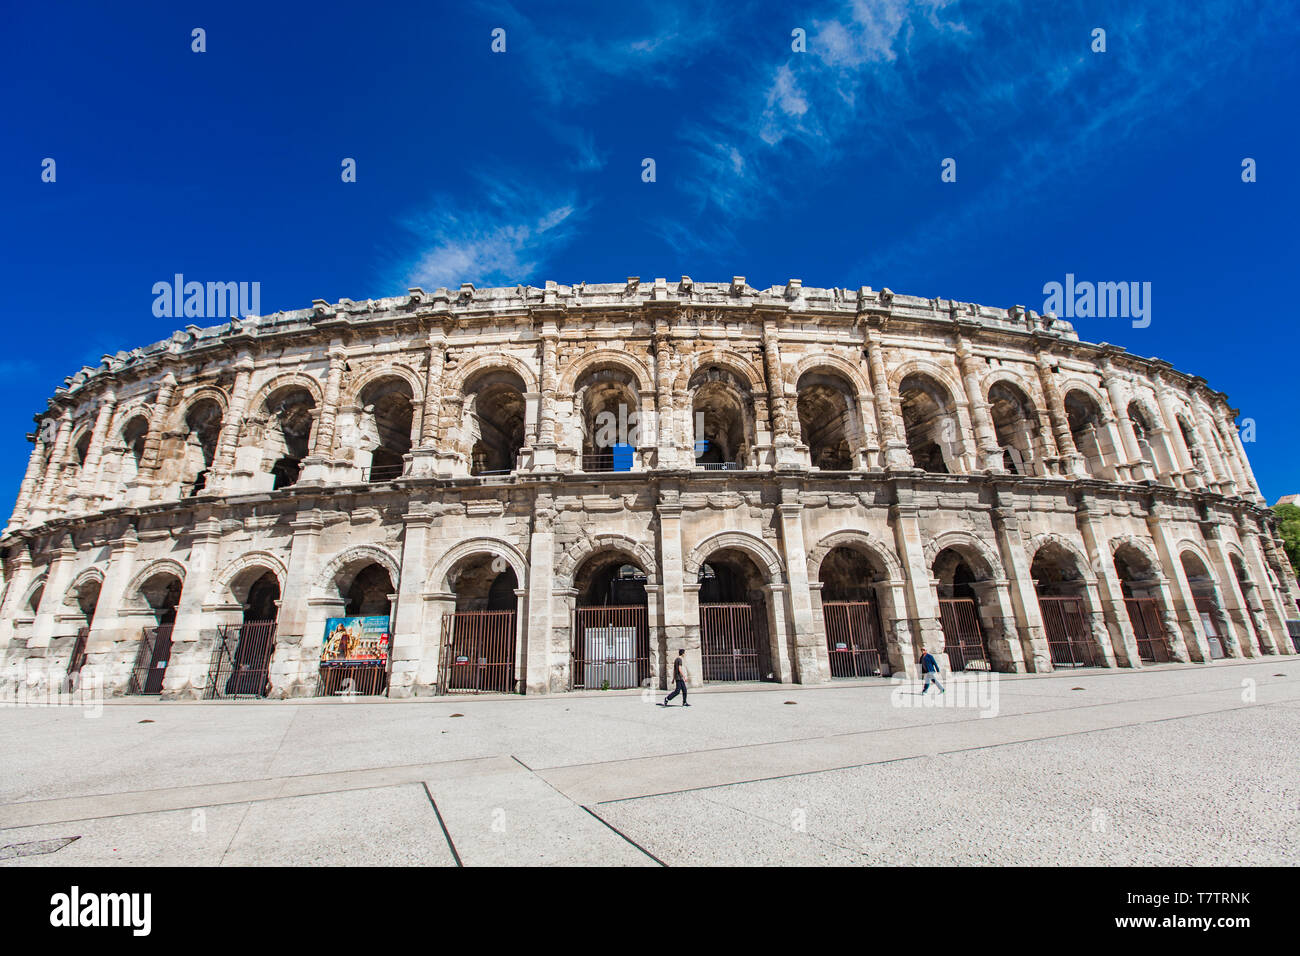 NIMES, Frankreich - 29. APRIL 2019: Arena von Nimes, römische Amphitheater in Nimes, Frankreich. Arena wurde um 70 N.CHR. erbaut und 1863 umgebaut als zu dienen Stockfoto